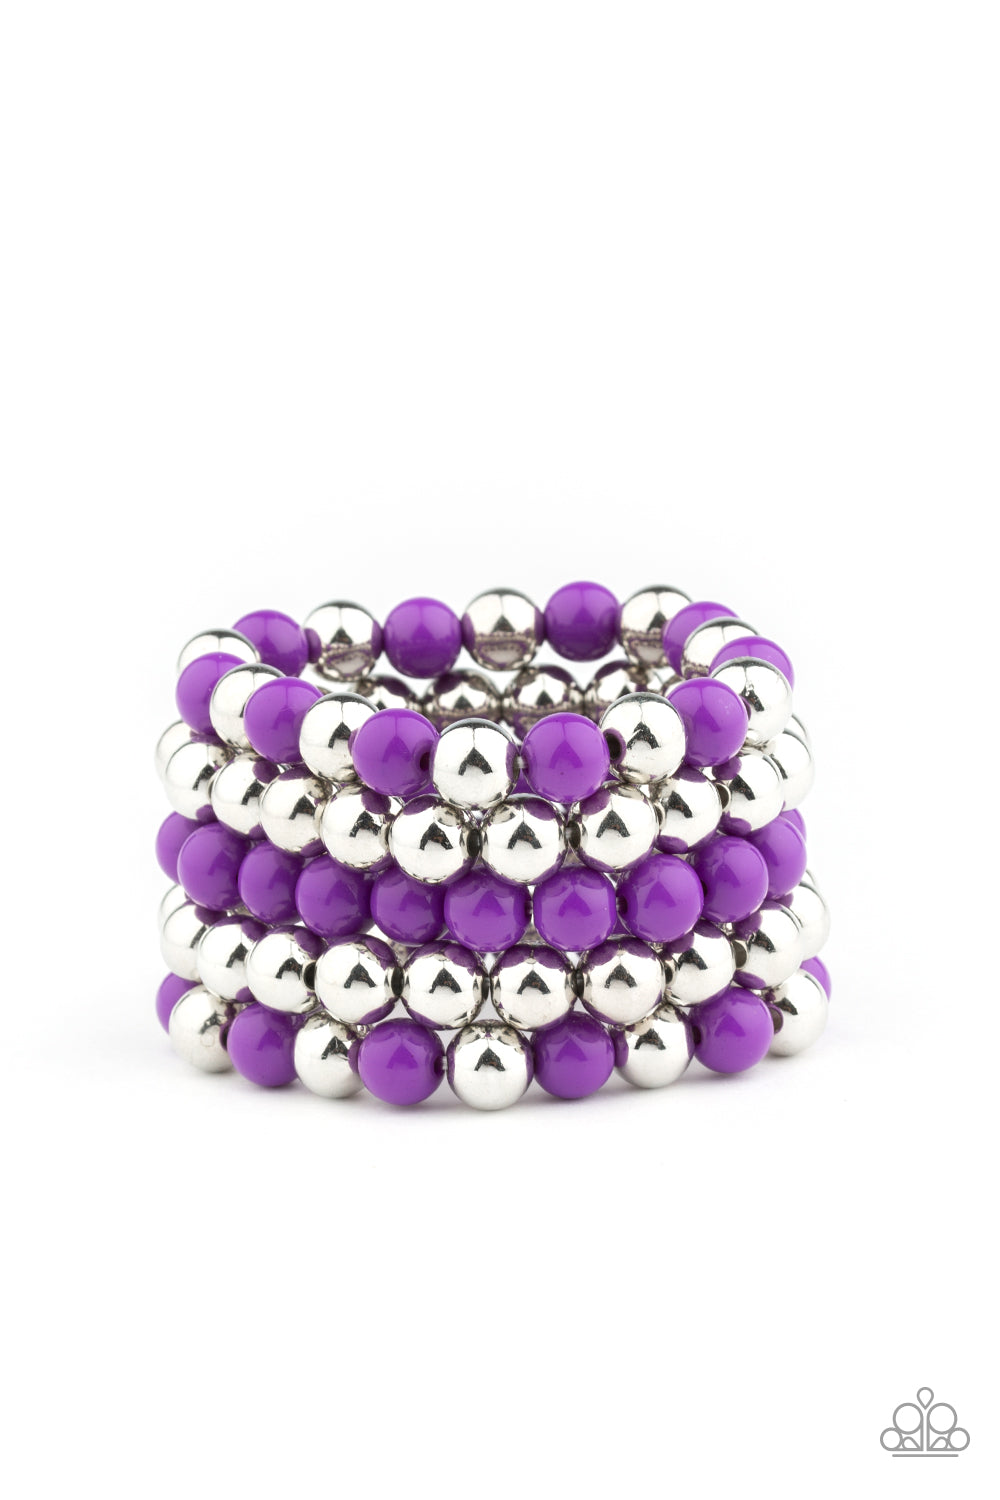 Paparazzi Bracelets - Pop-YOU-lar Culture - Purple